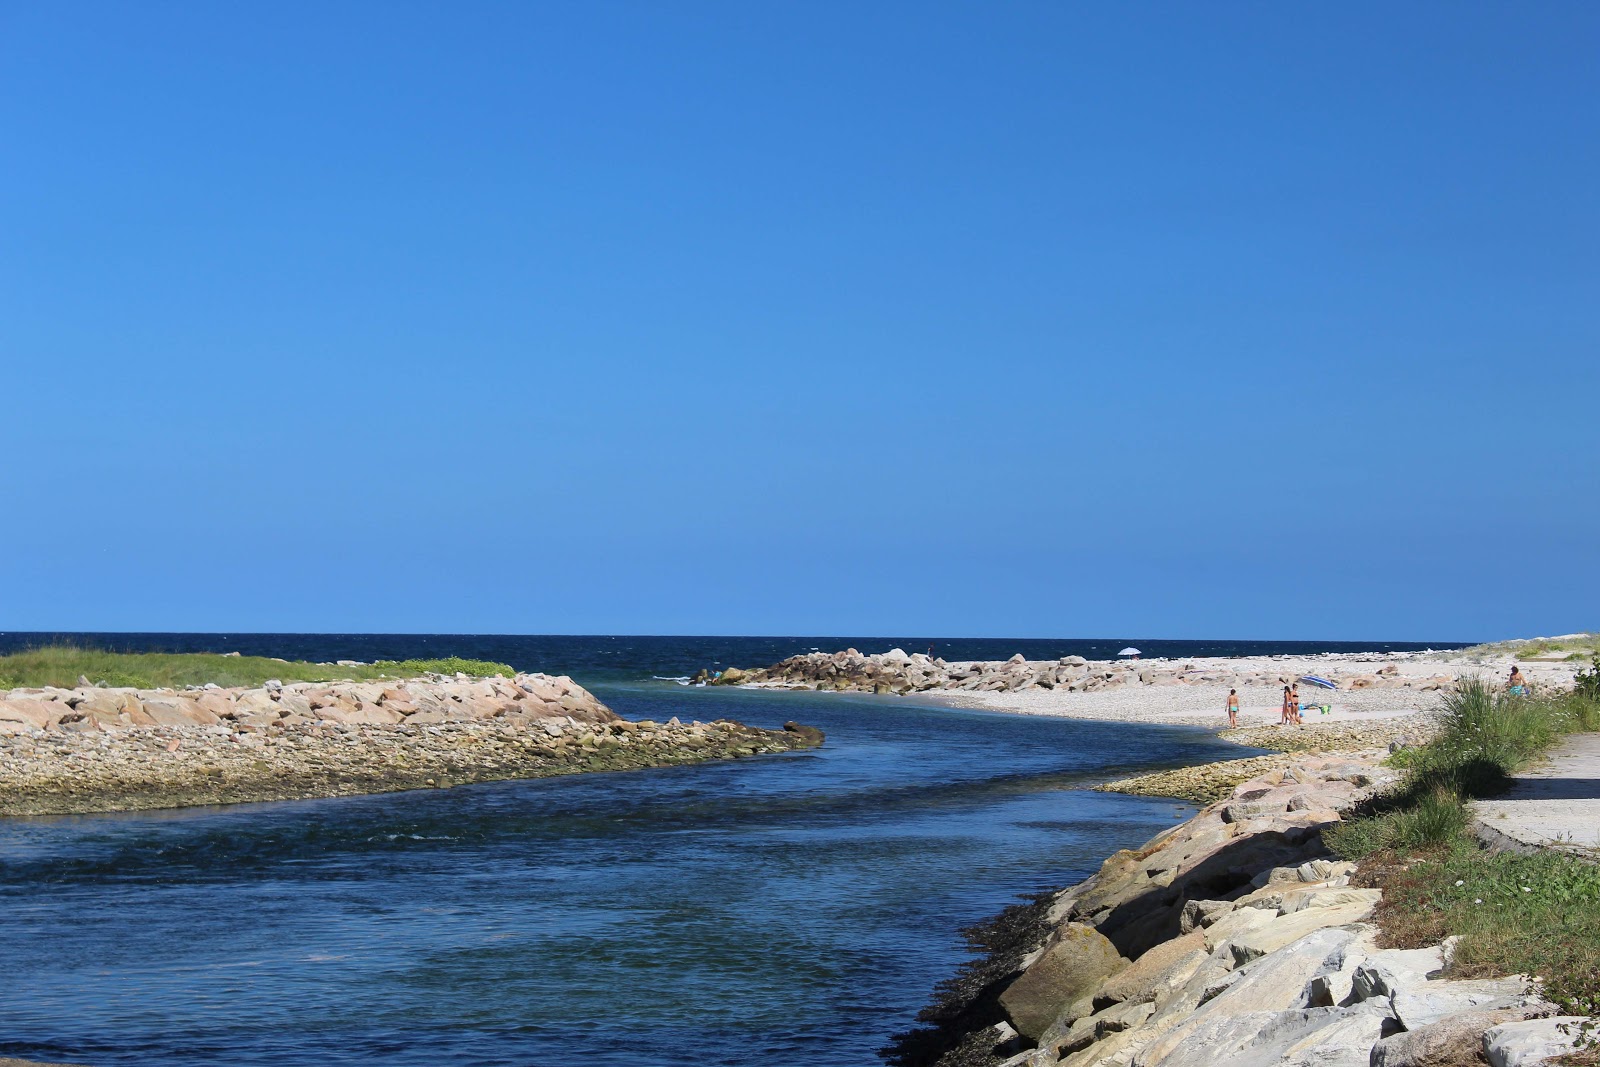 Playa Pampillosa'in fotoğrafı geniş plaj ile birlikte